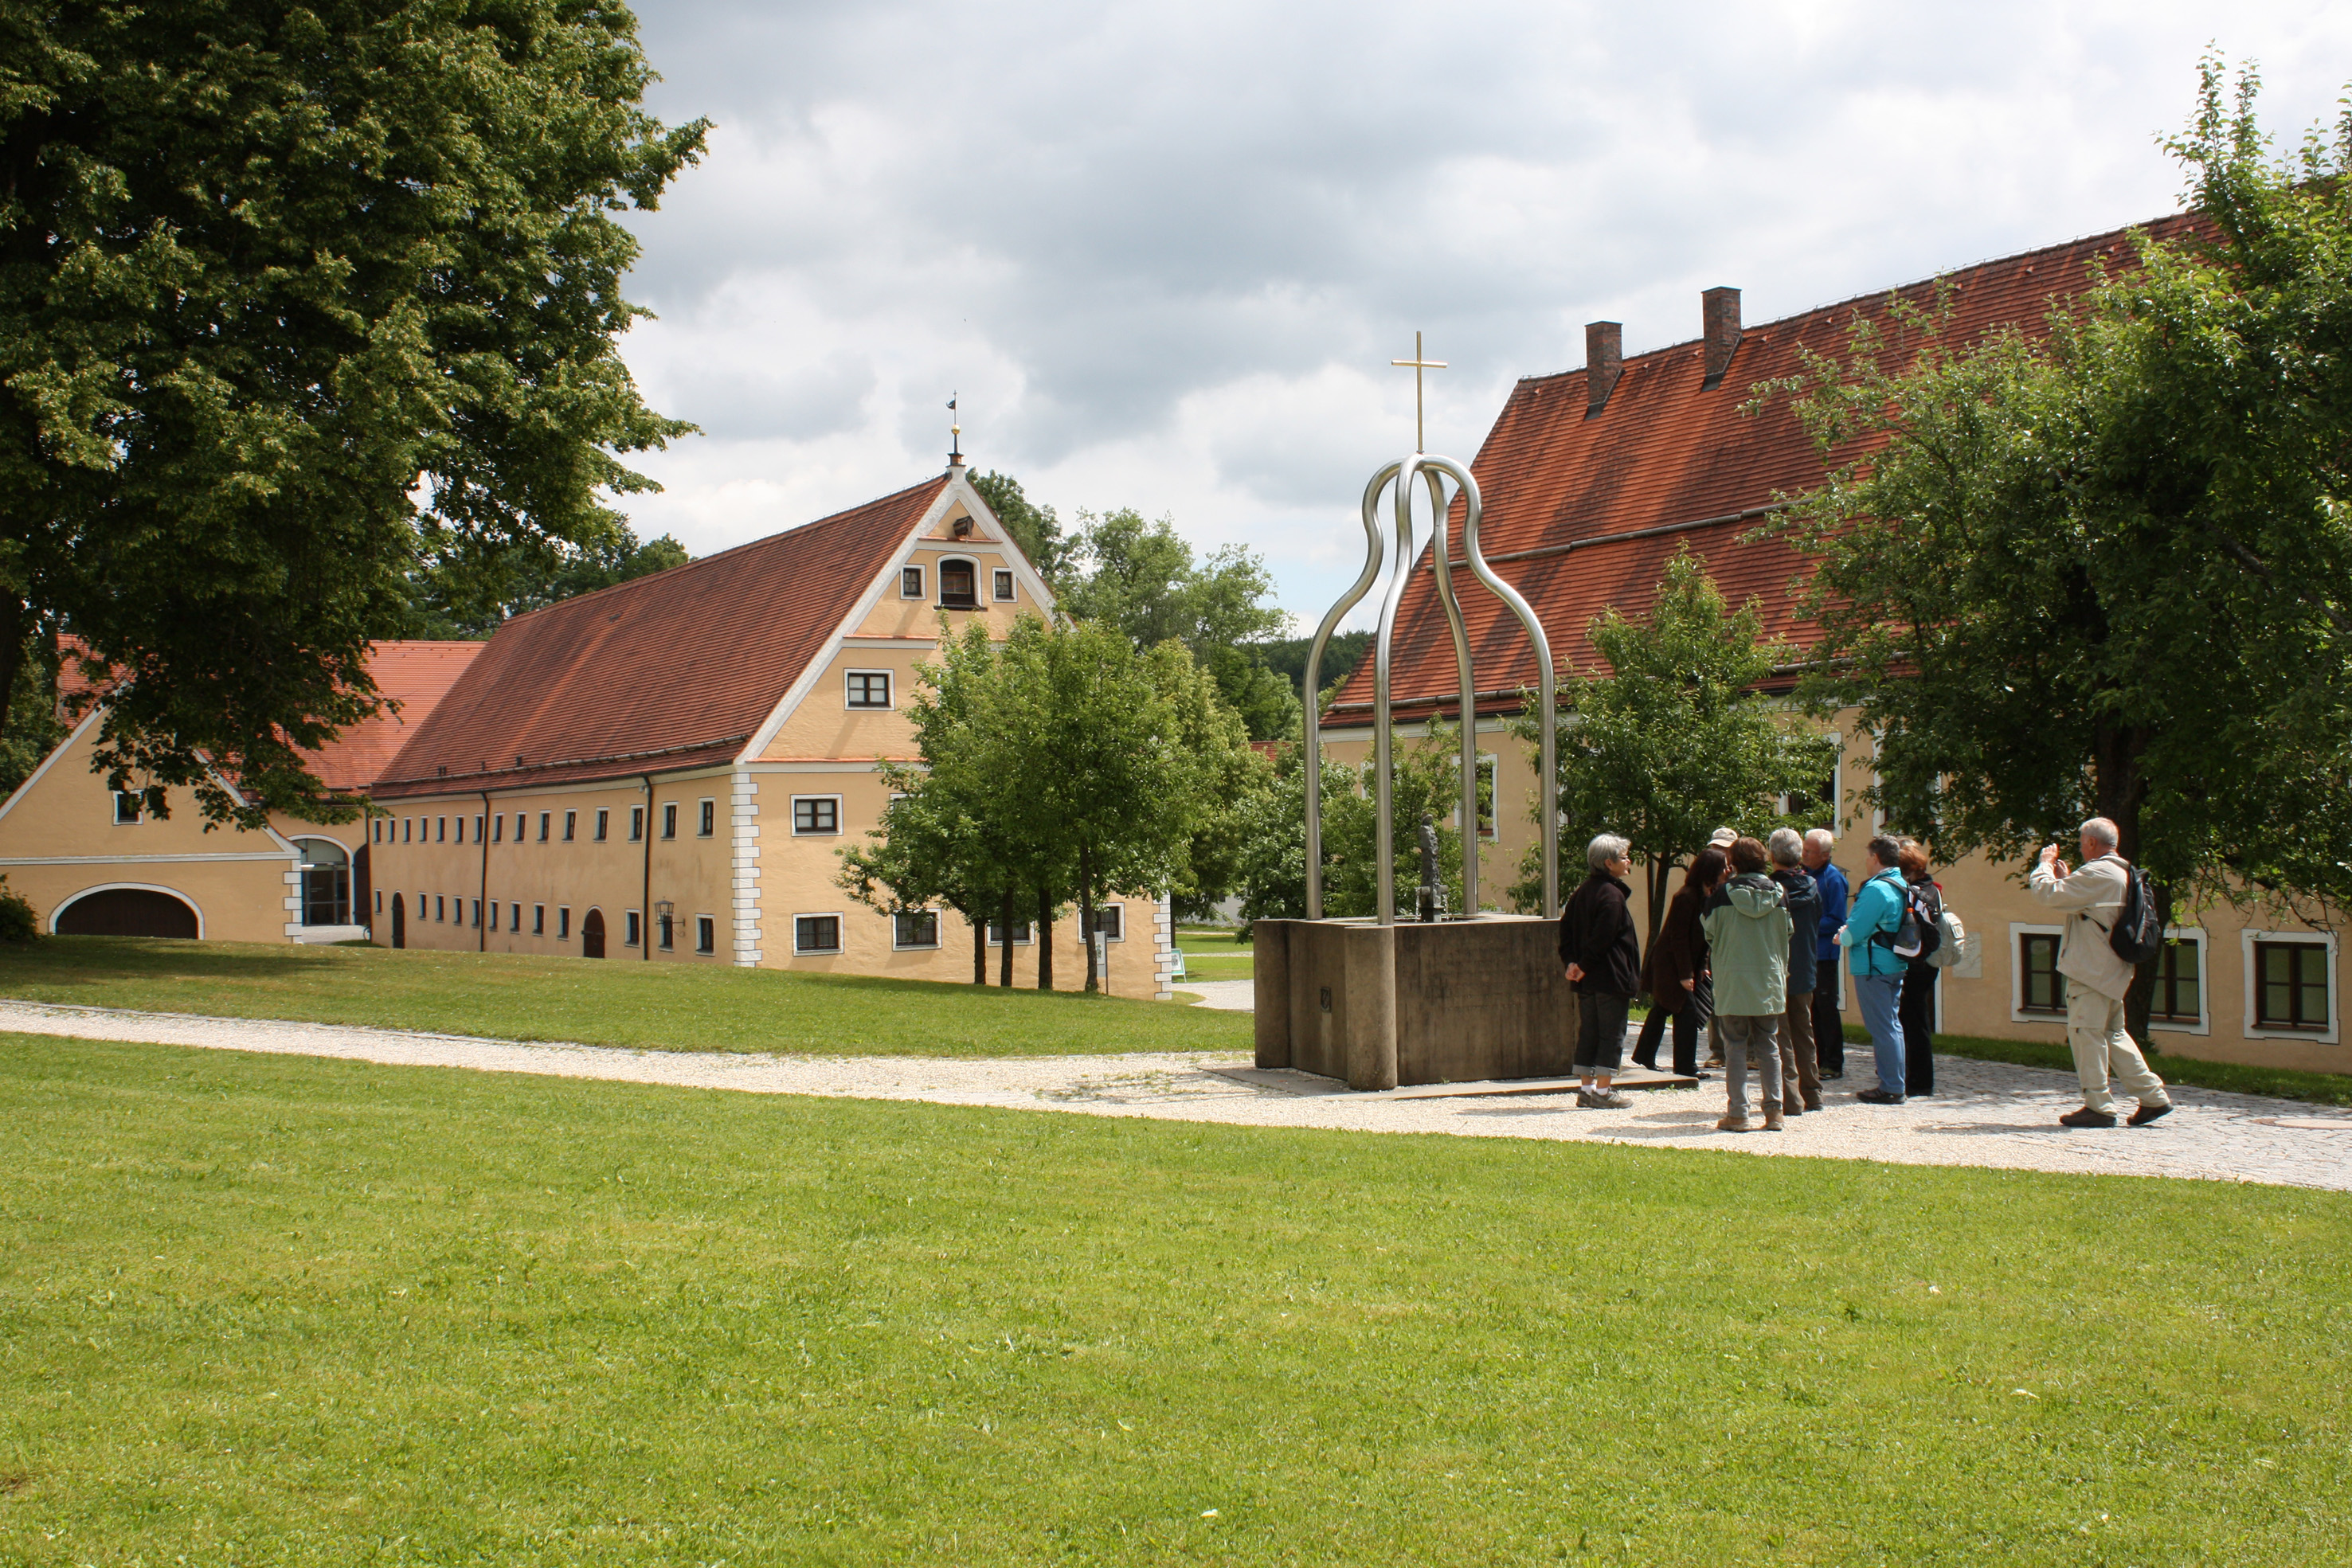 Brunnen im Klosterhof mit Besuchern und Gebäuden im Hintergrund